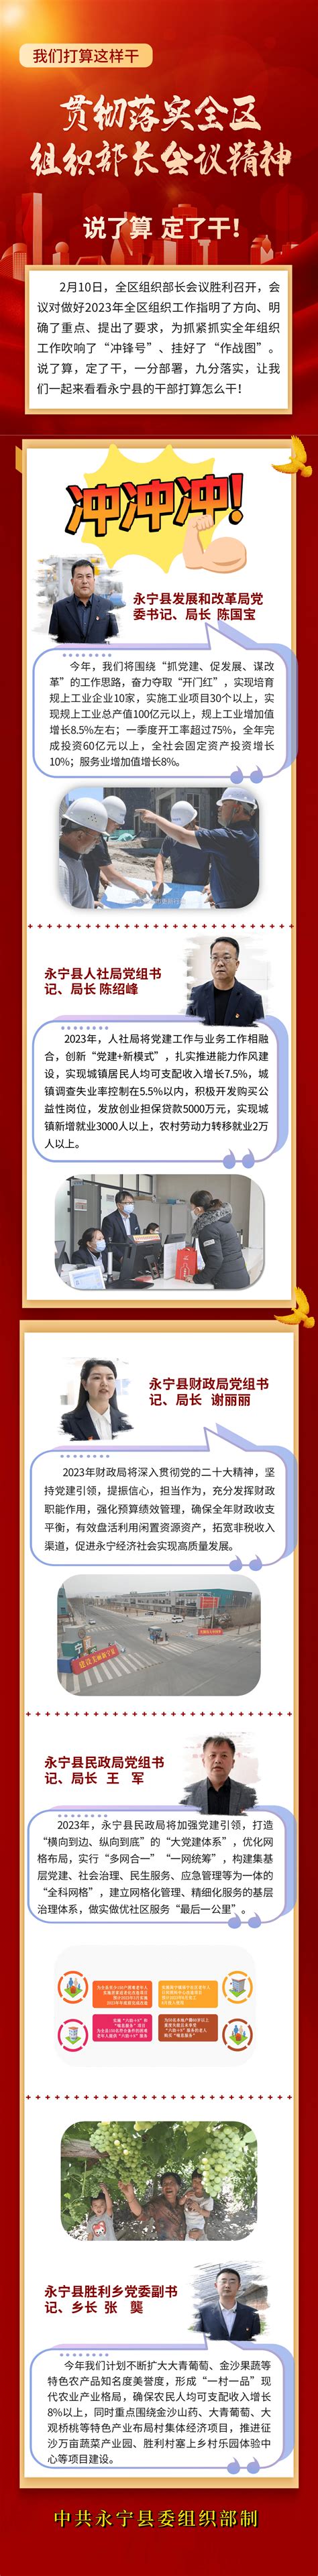 银川高级中学举行第六届成人礼仪式-宁夏新闻网